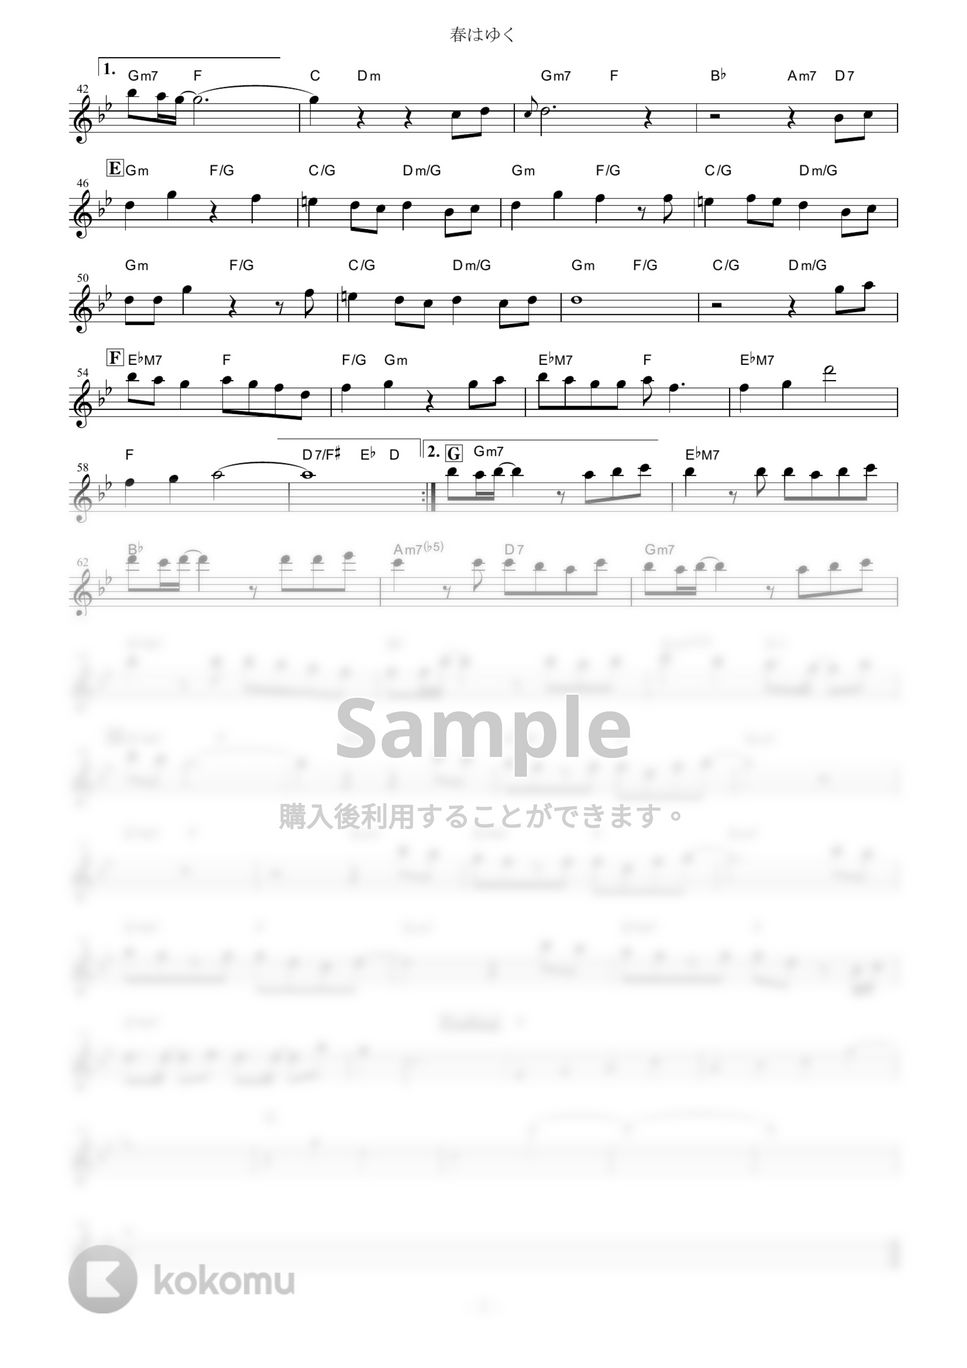 劇場版「Fate/stay night [Heaven's Feel]」III.spring song - 春はゆく【in Bb】 by muta-sax